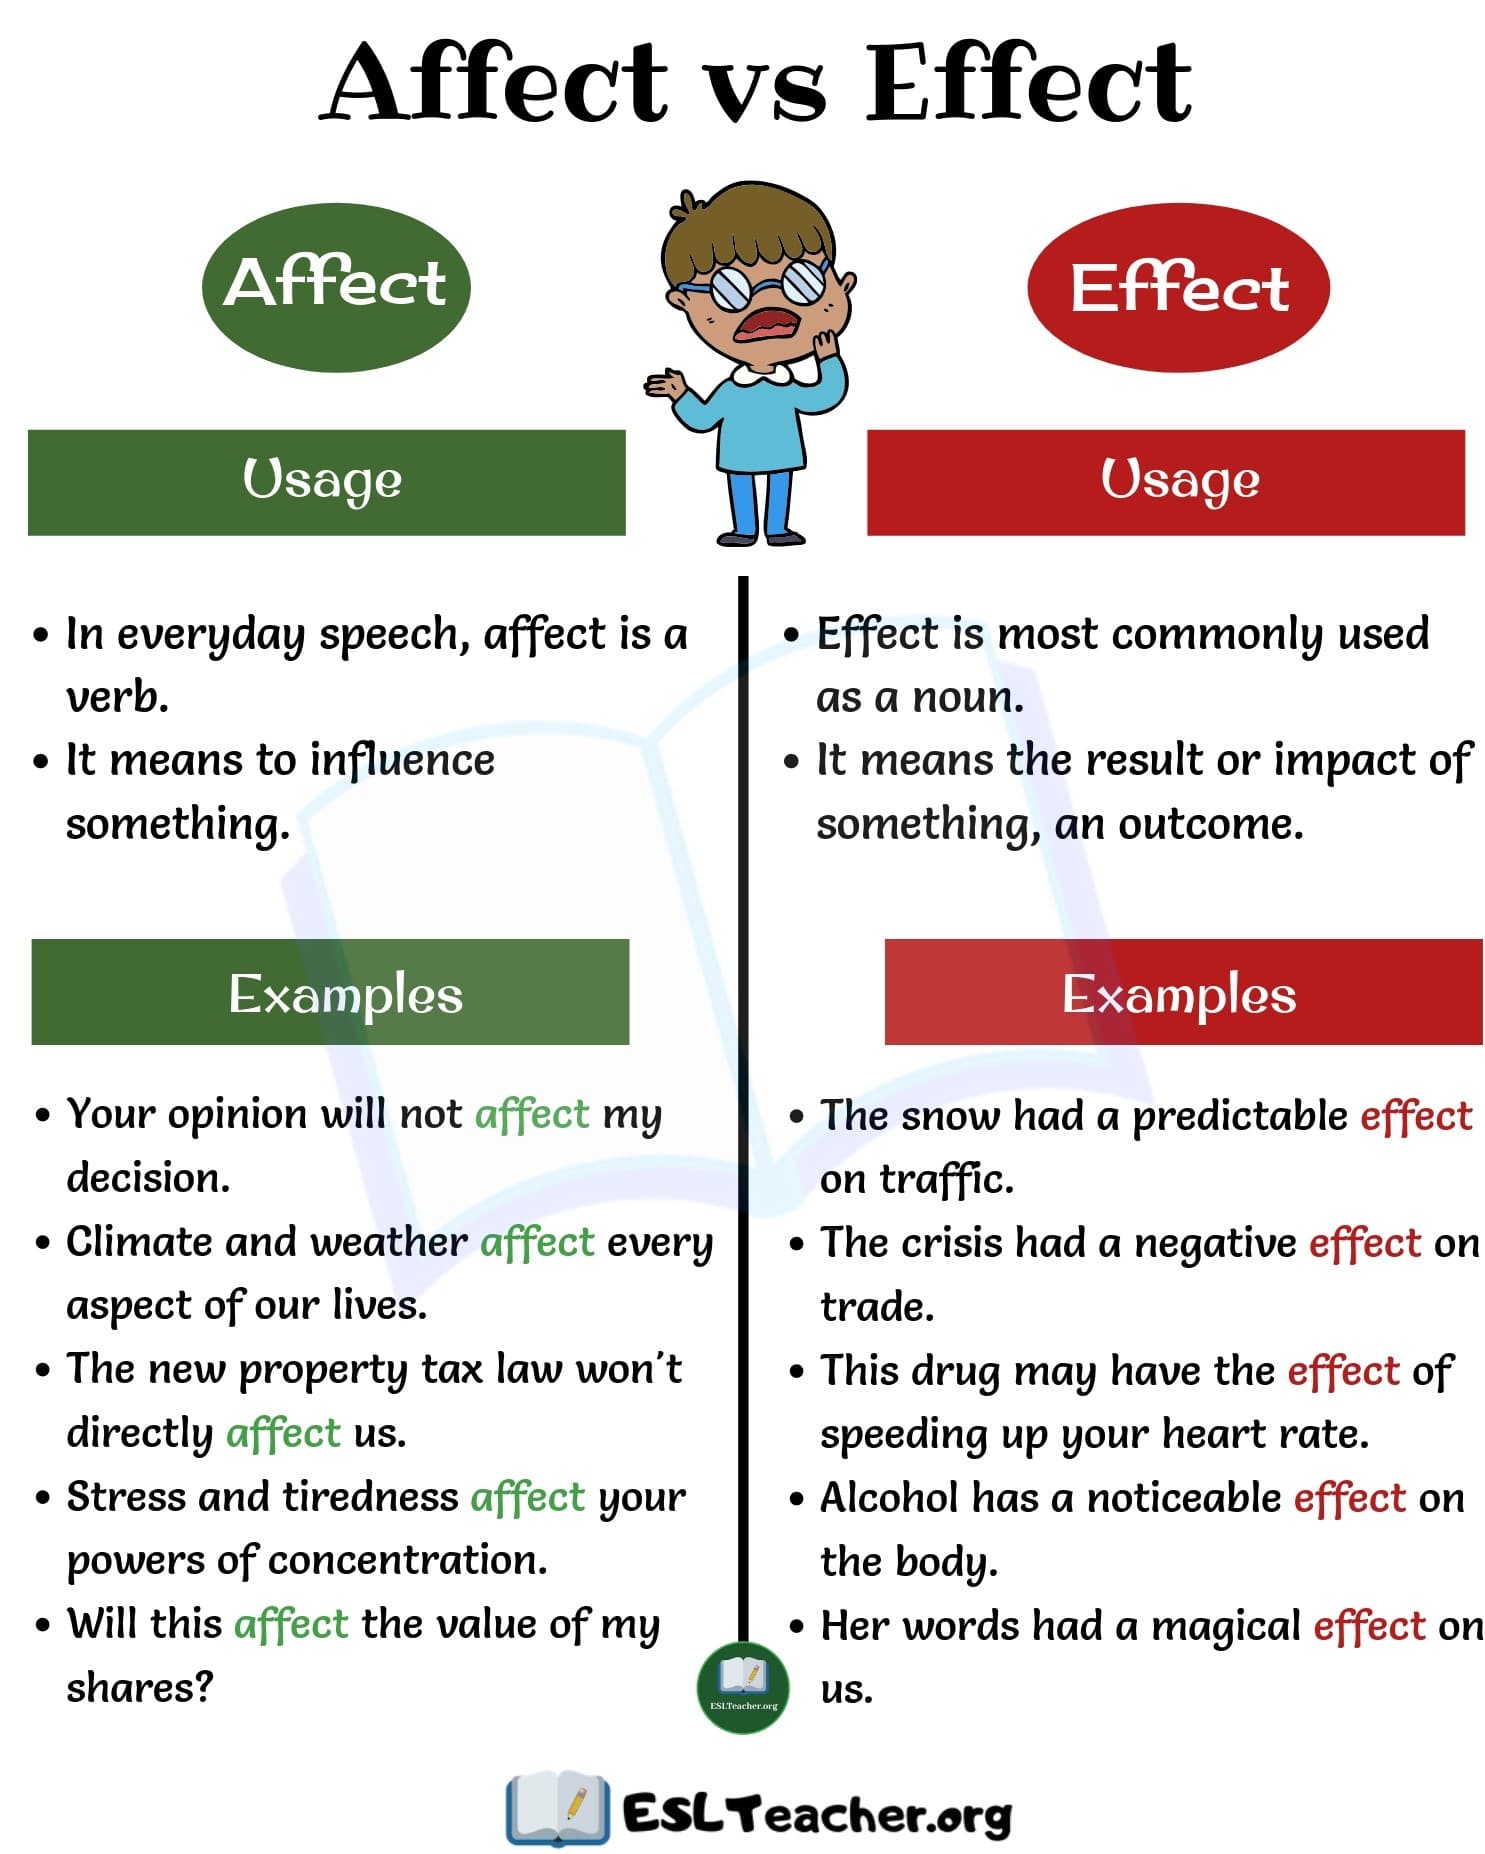 Effects effects разница. Affect Effect разница. Effected affected разница. Предложения со словом affects. Предложения со словом Effected.